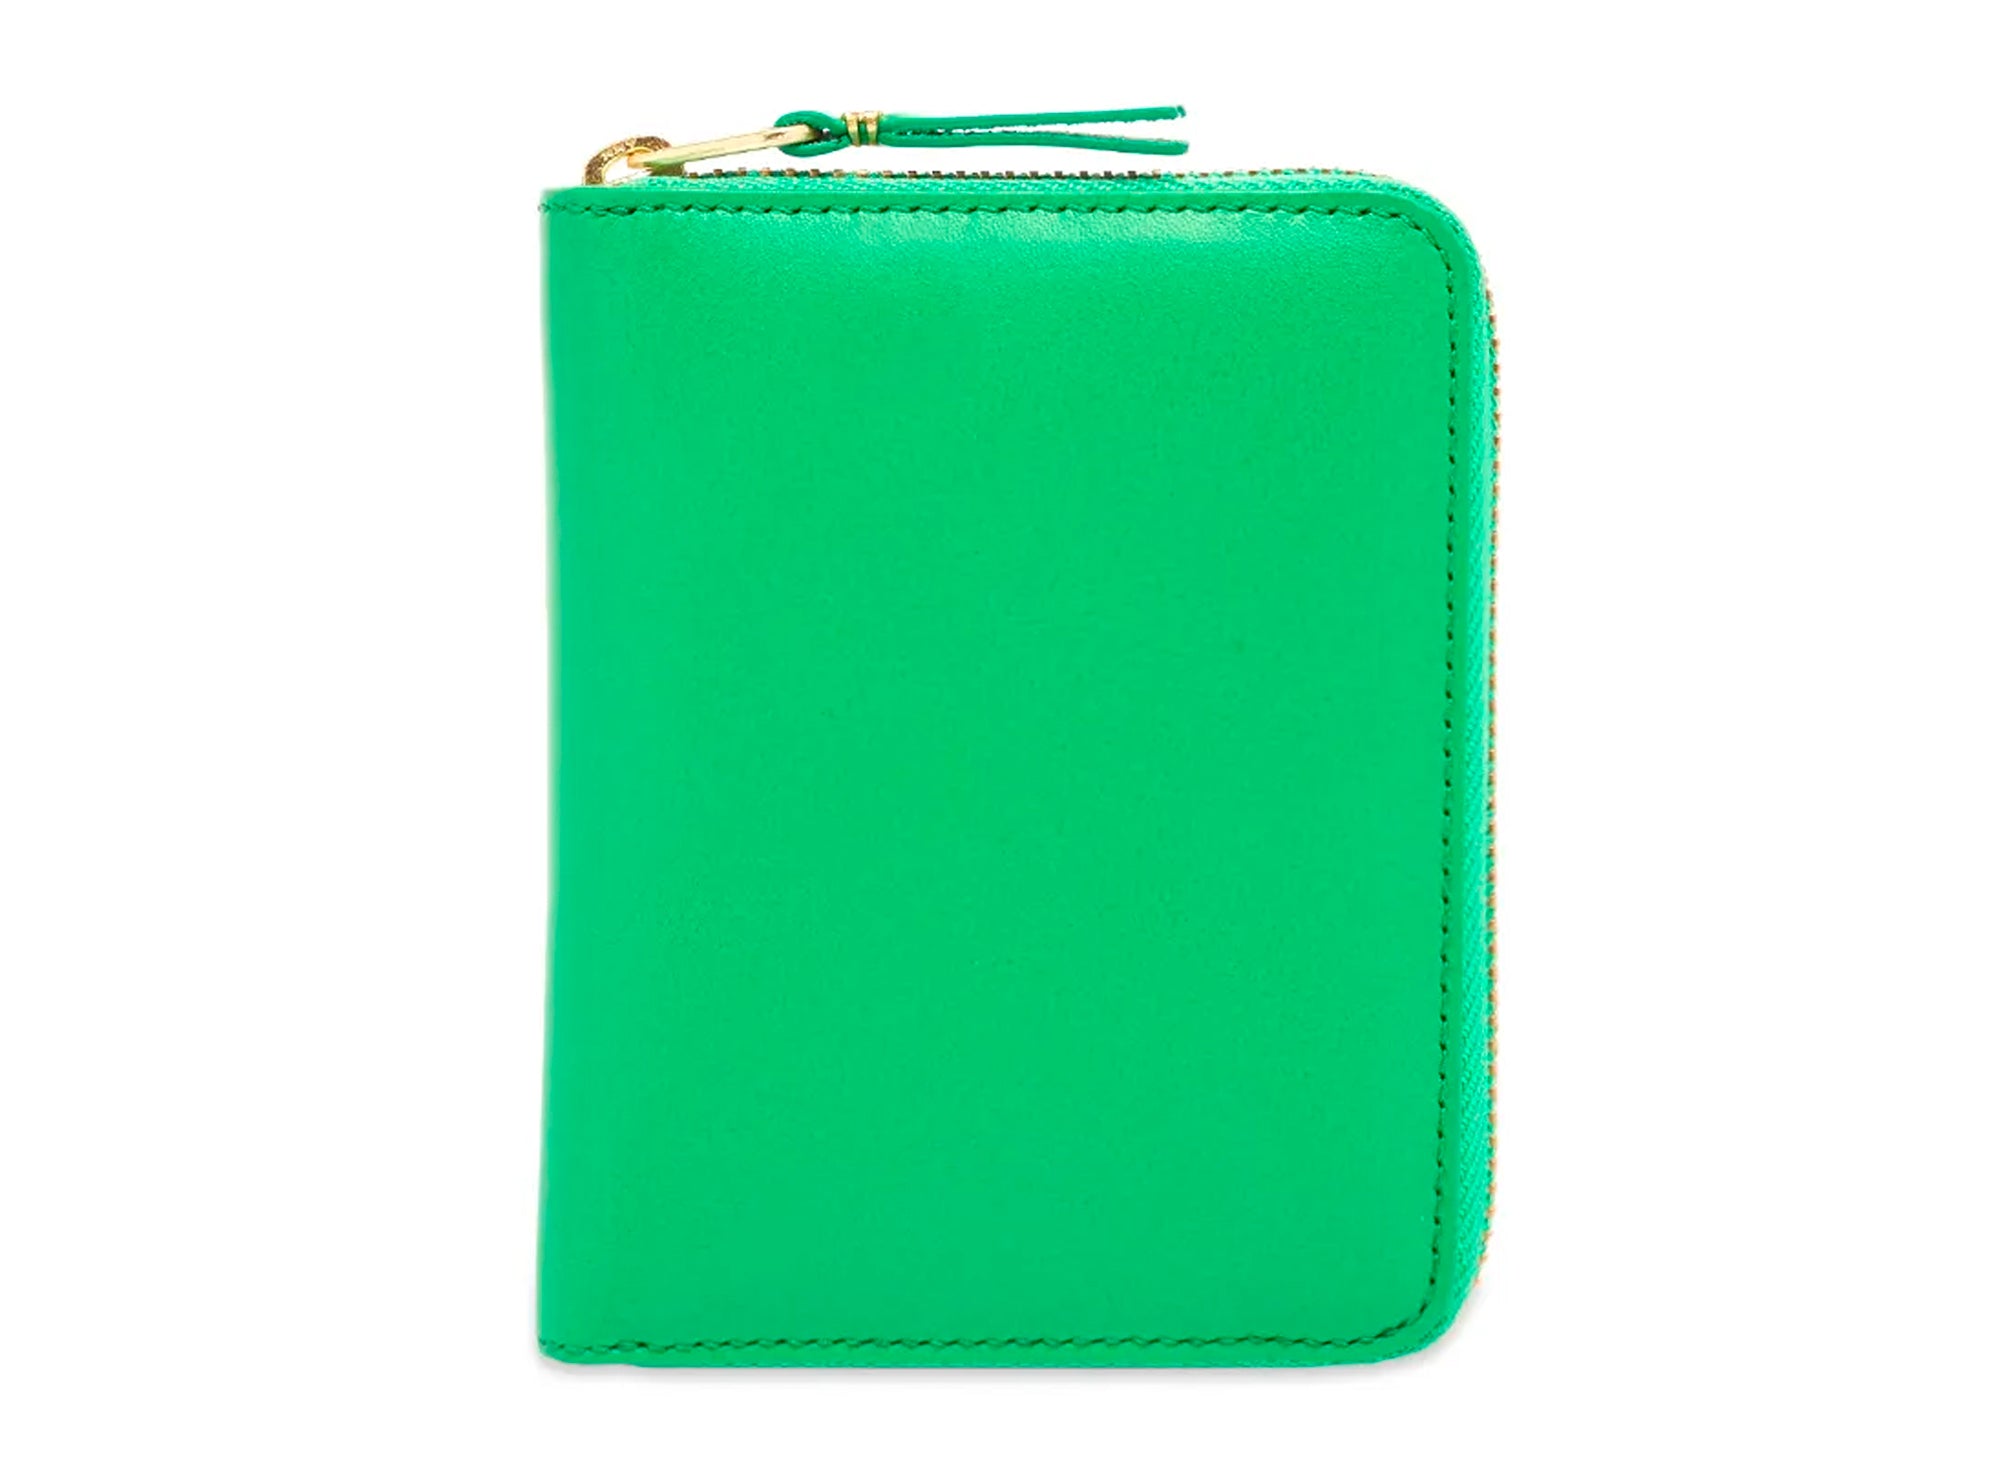 Comme des Garçon Leather Wallet in Green – Boutique